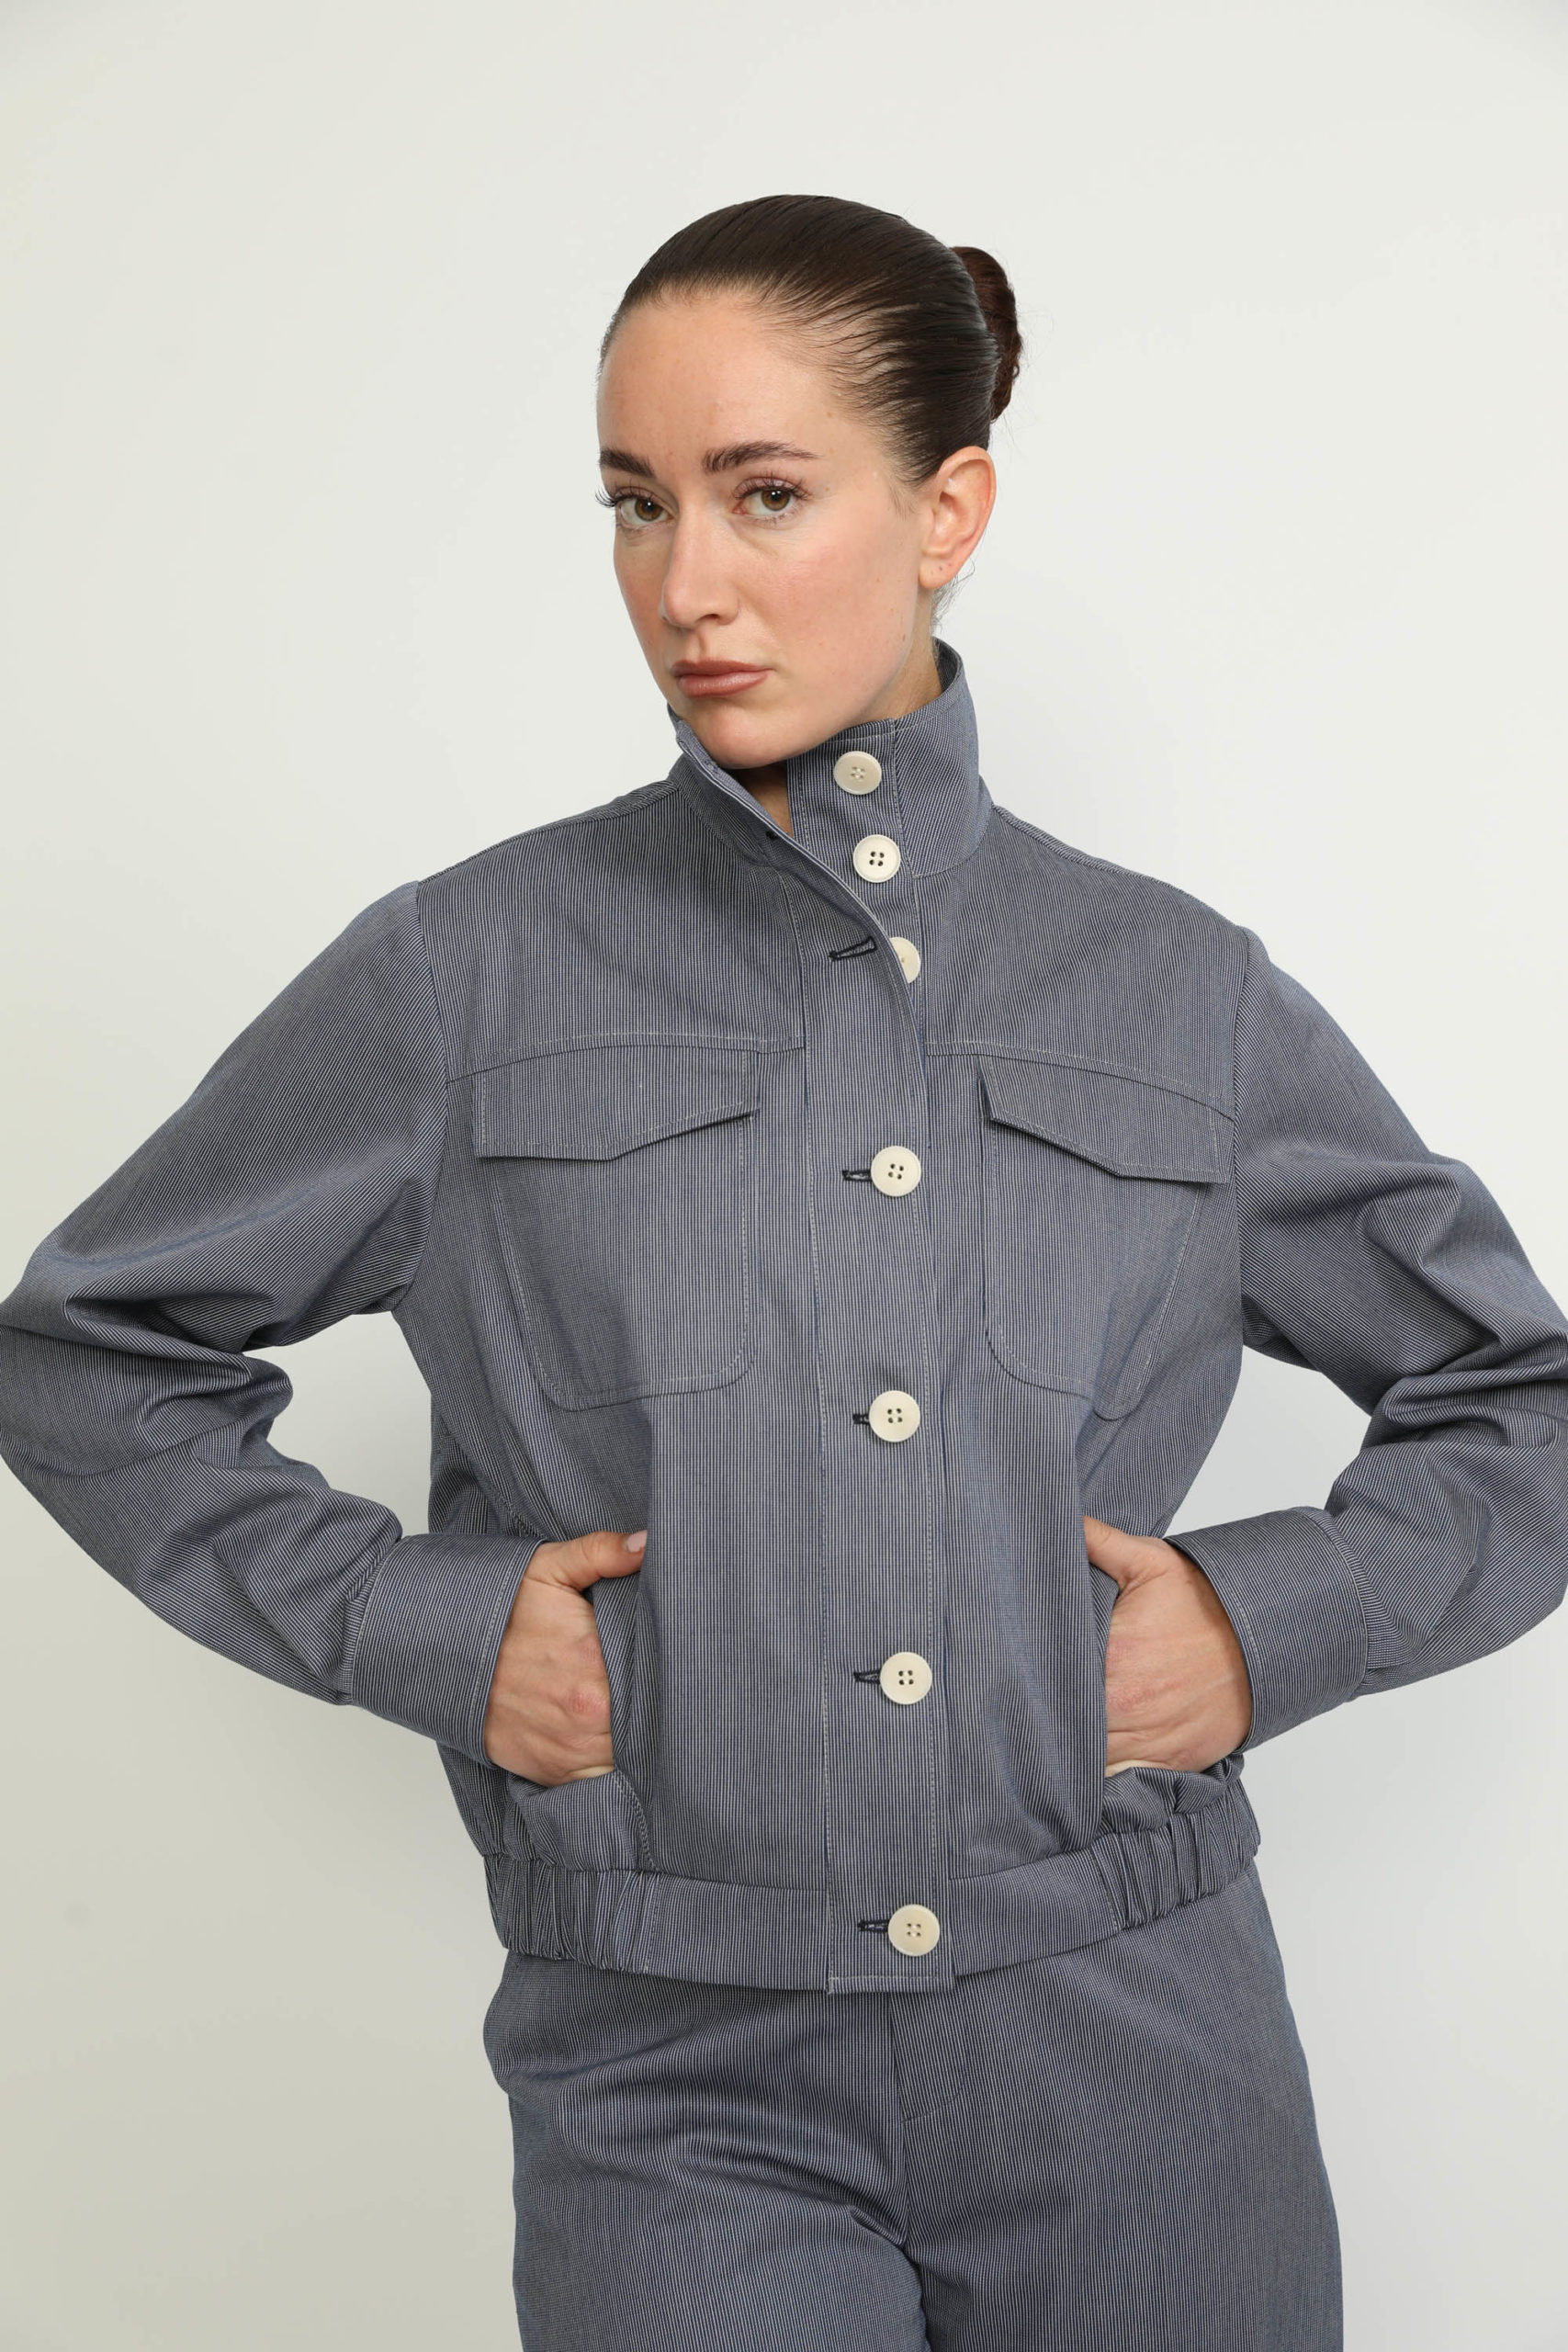 Colombier Jacket – Colombier Denim Blue Pinstripe Utility Jacket